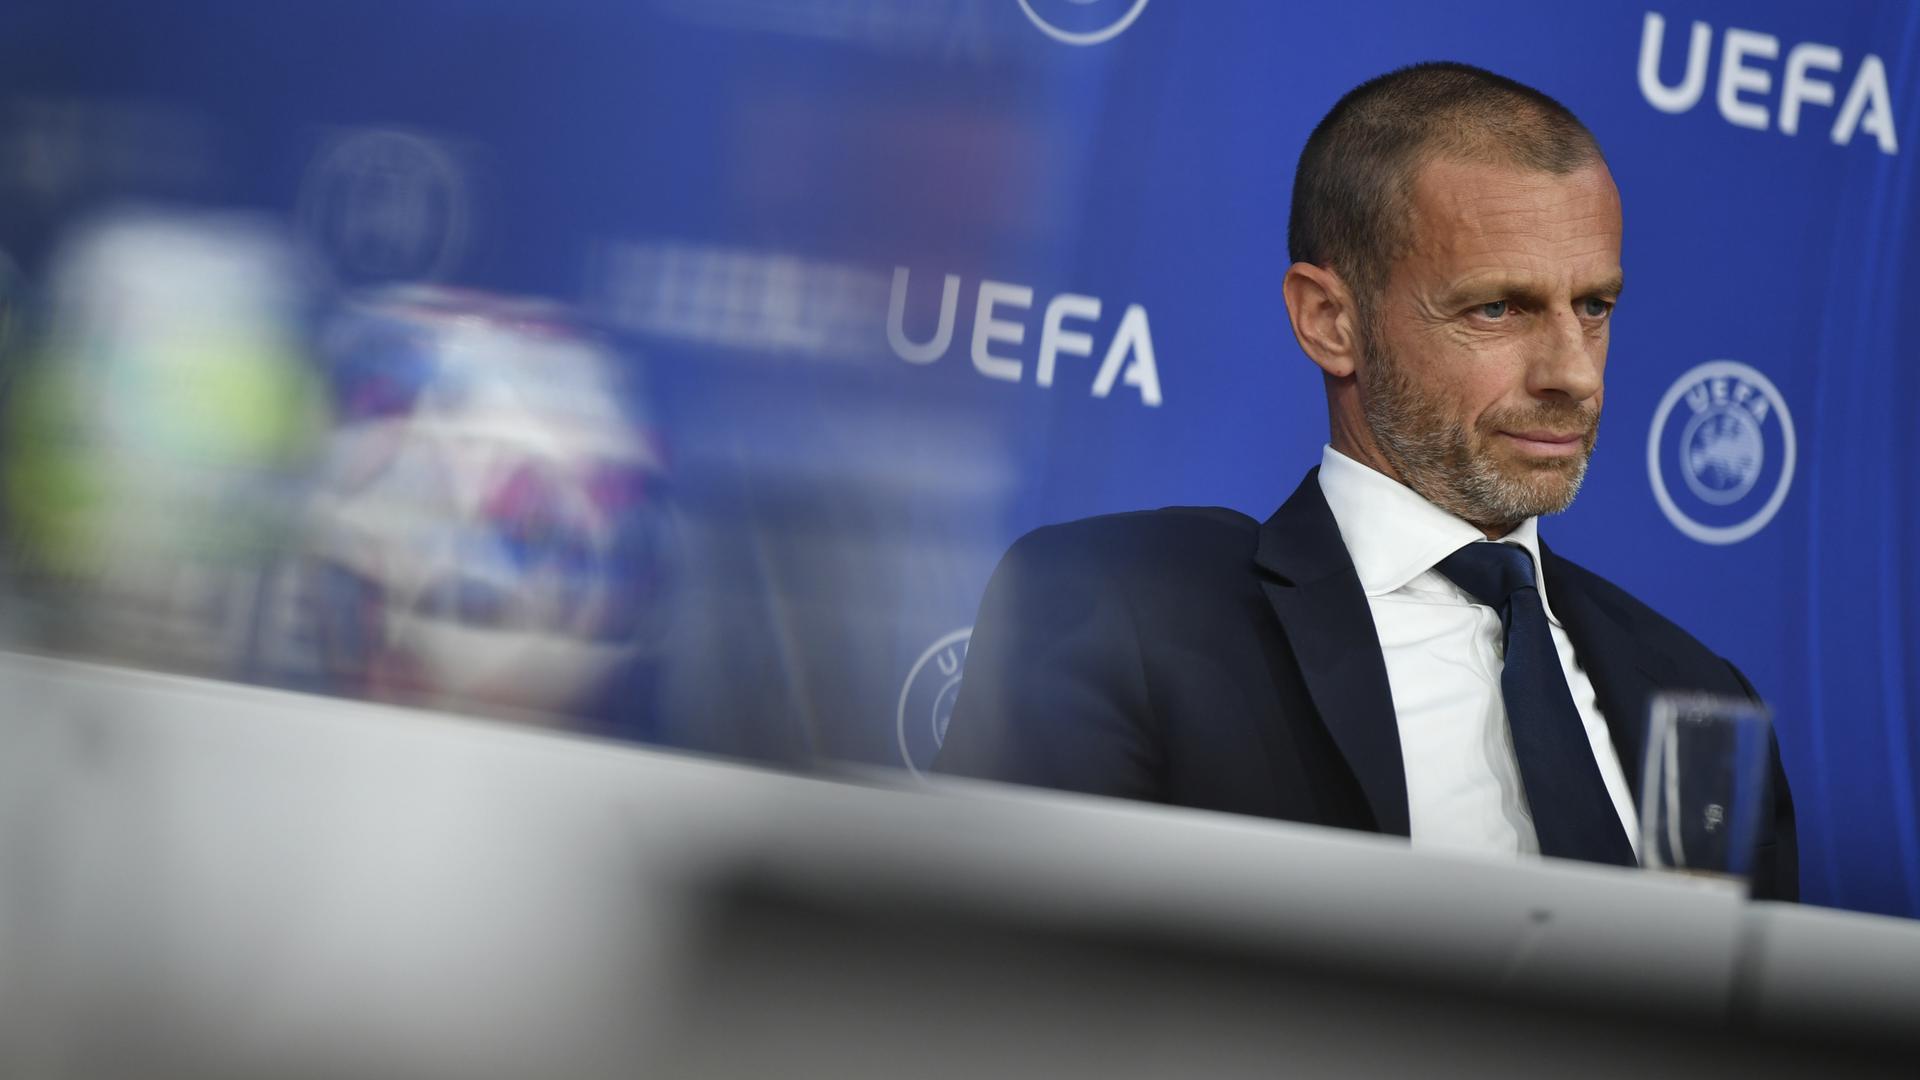 Uefaがヨーロッパリーグについて発表 マンチェスター ユナイテッド公式サイト